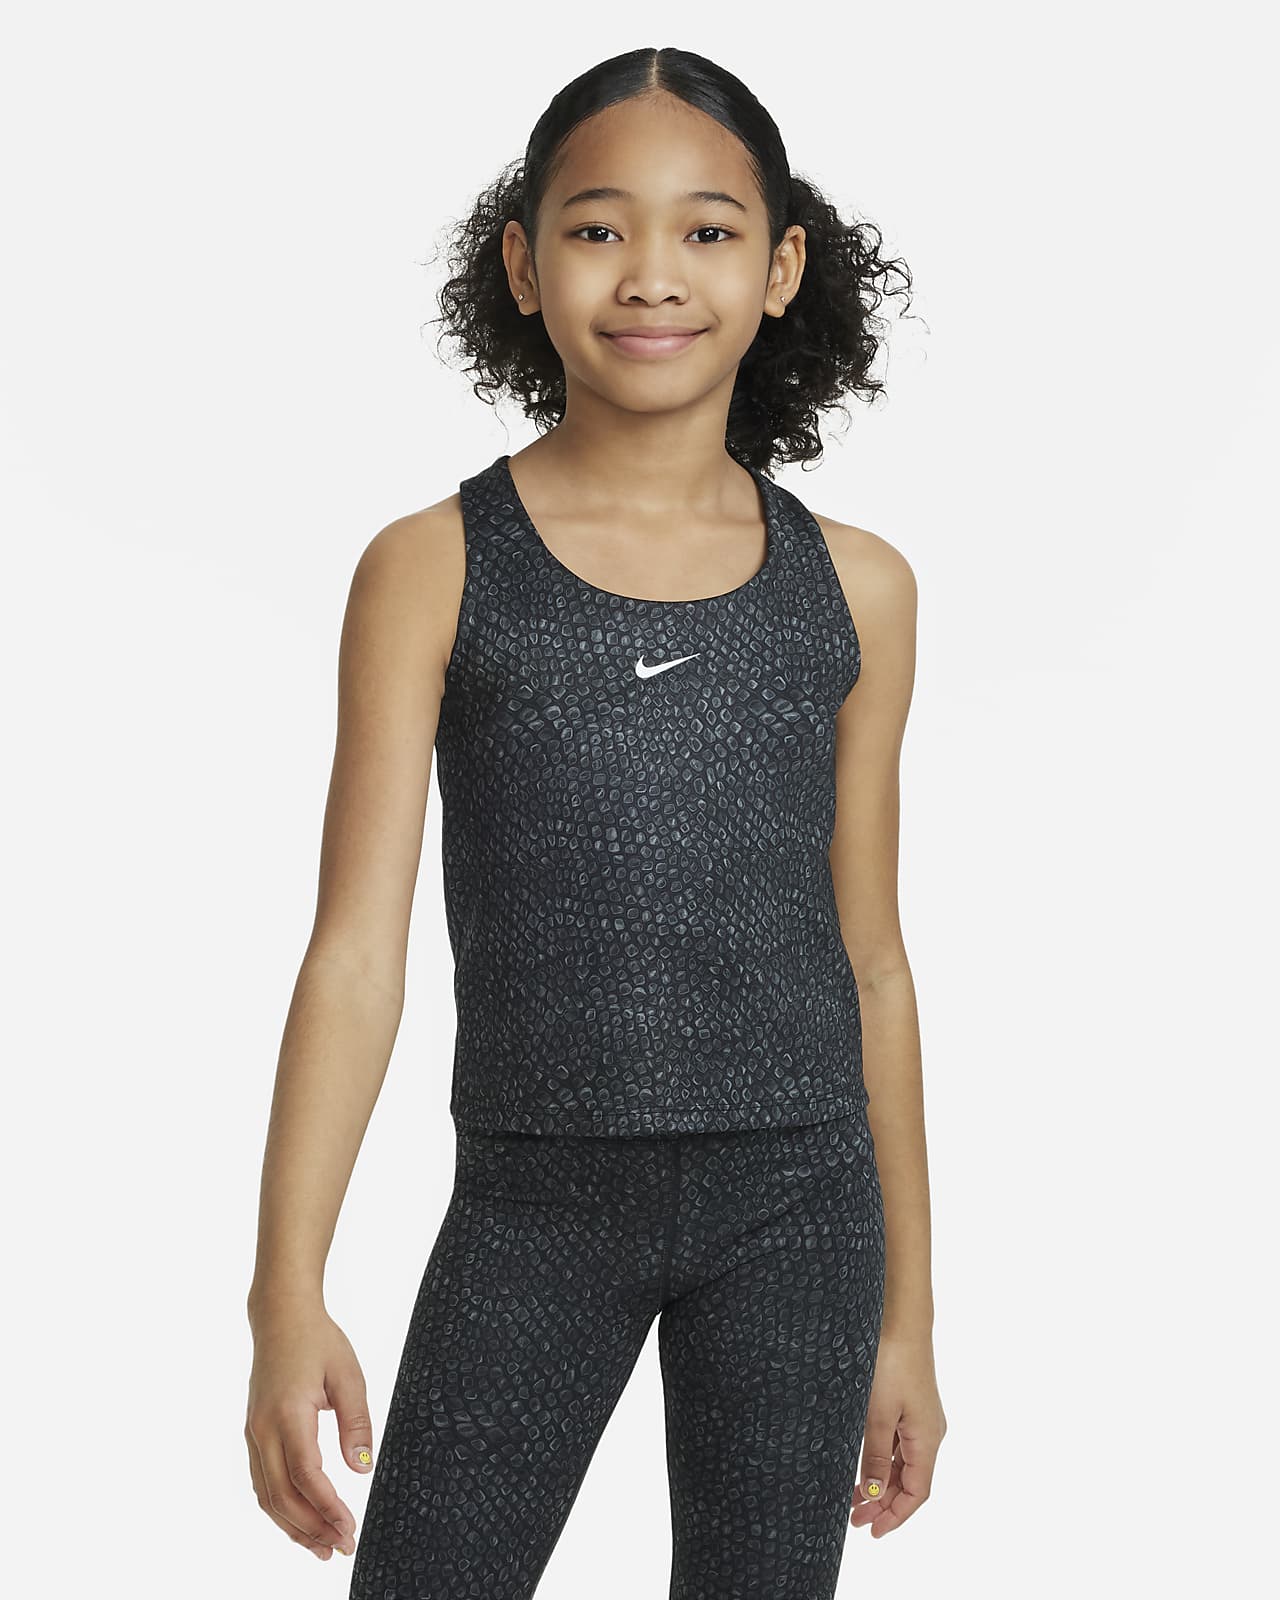 สปอร์ตบราเสื้อกล้ามเด็กโต Nike Swoosh (หญิง)